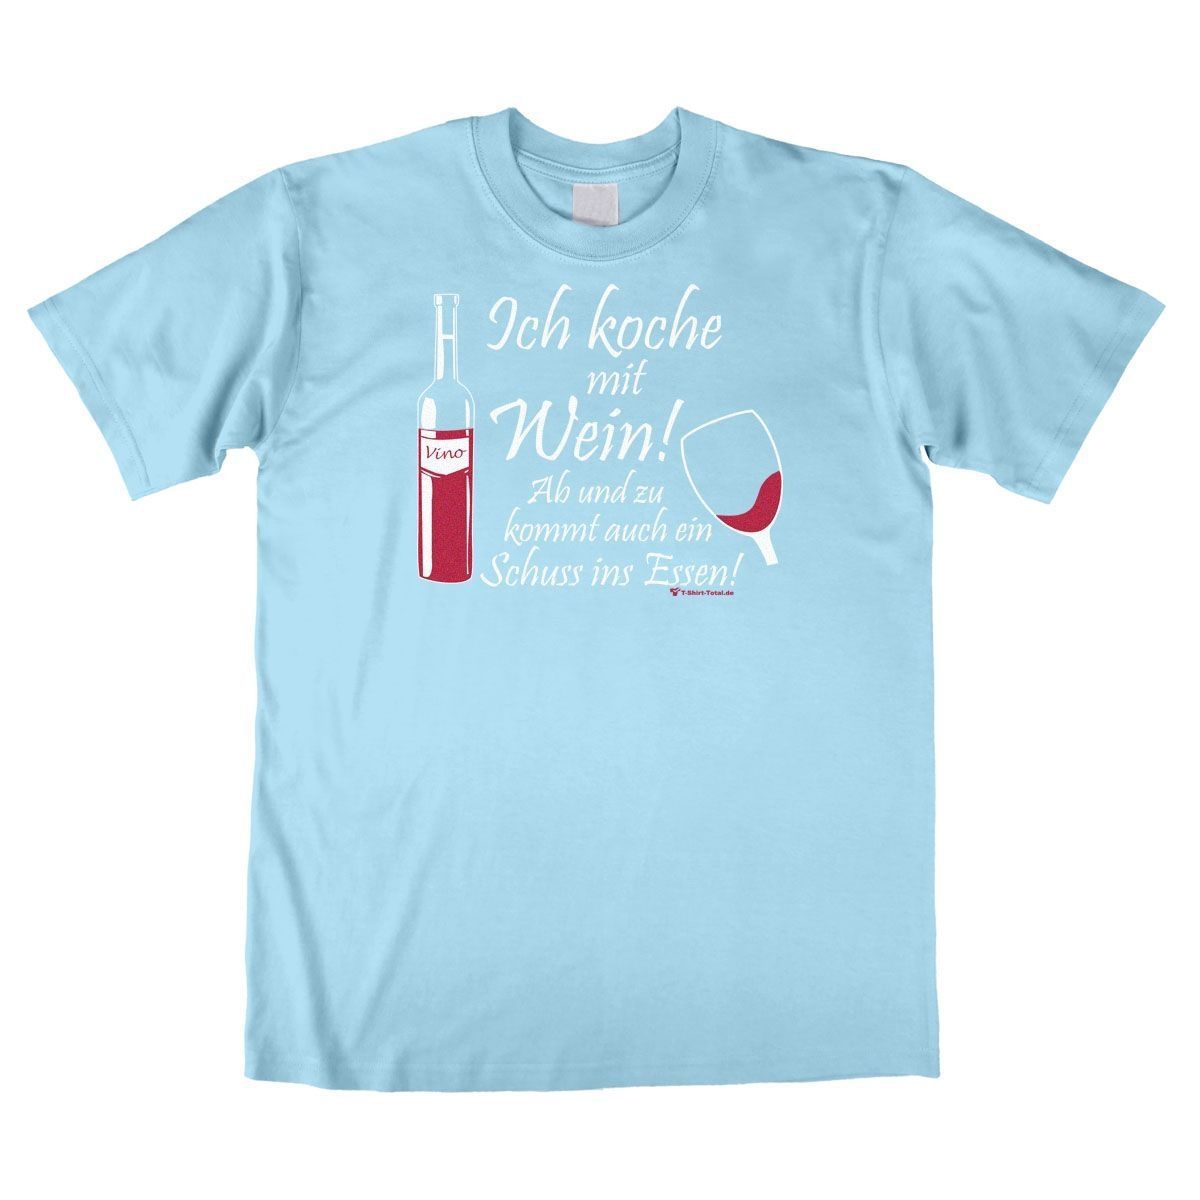 Koche mit Wein Unisex T-Shirt hellblau Medium